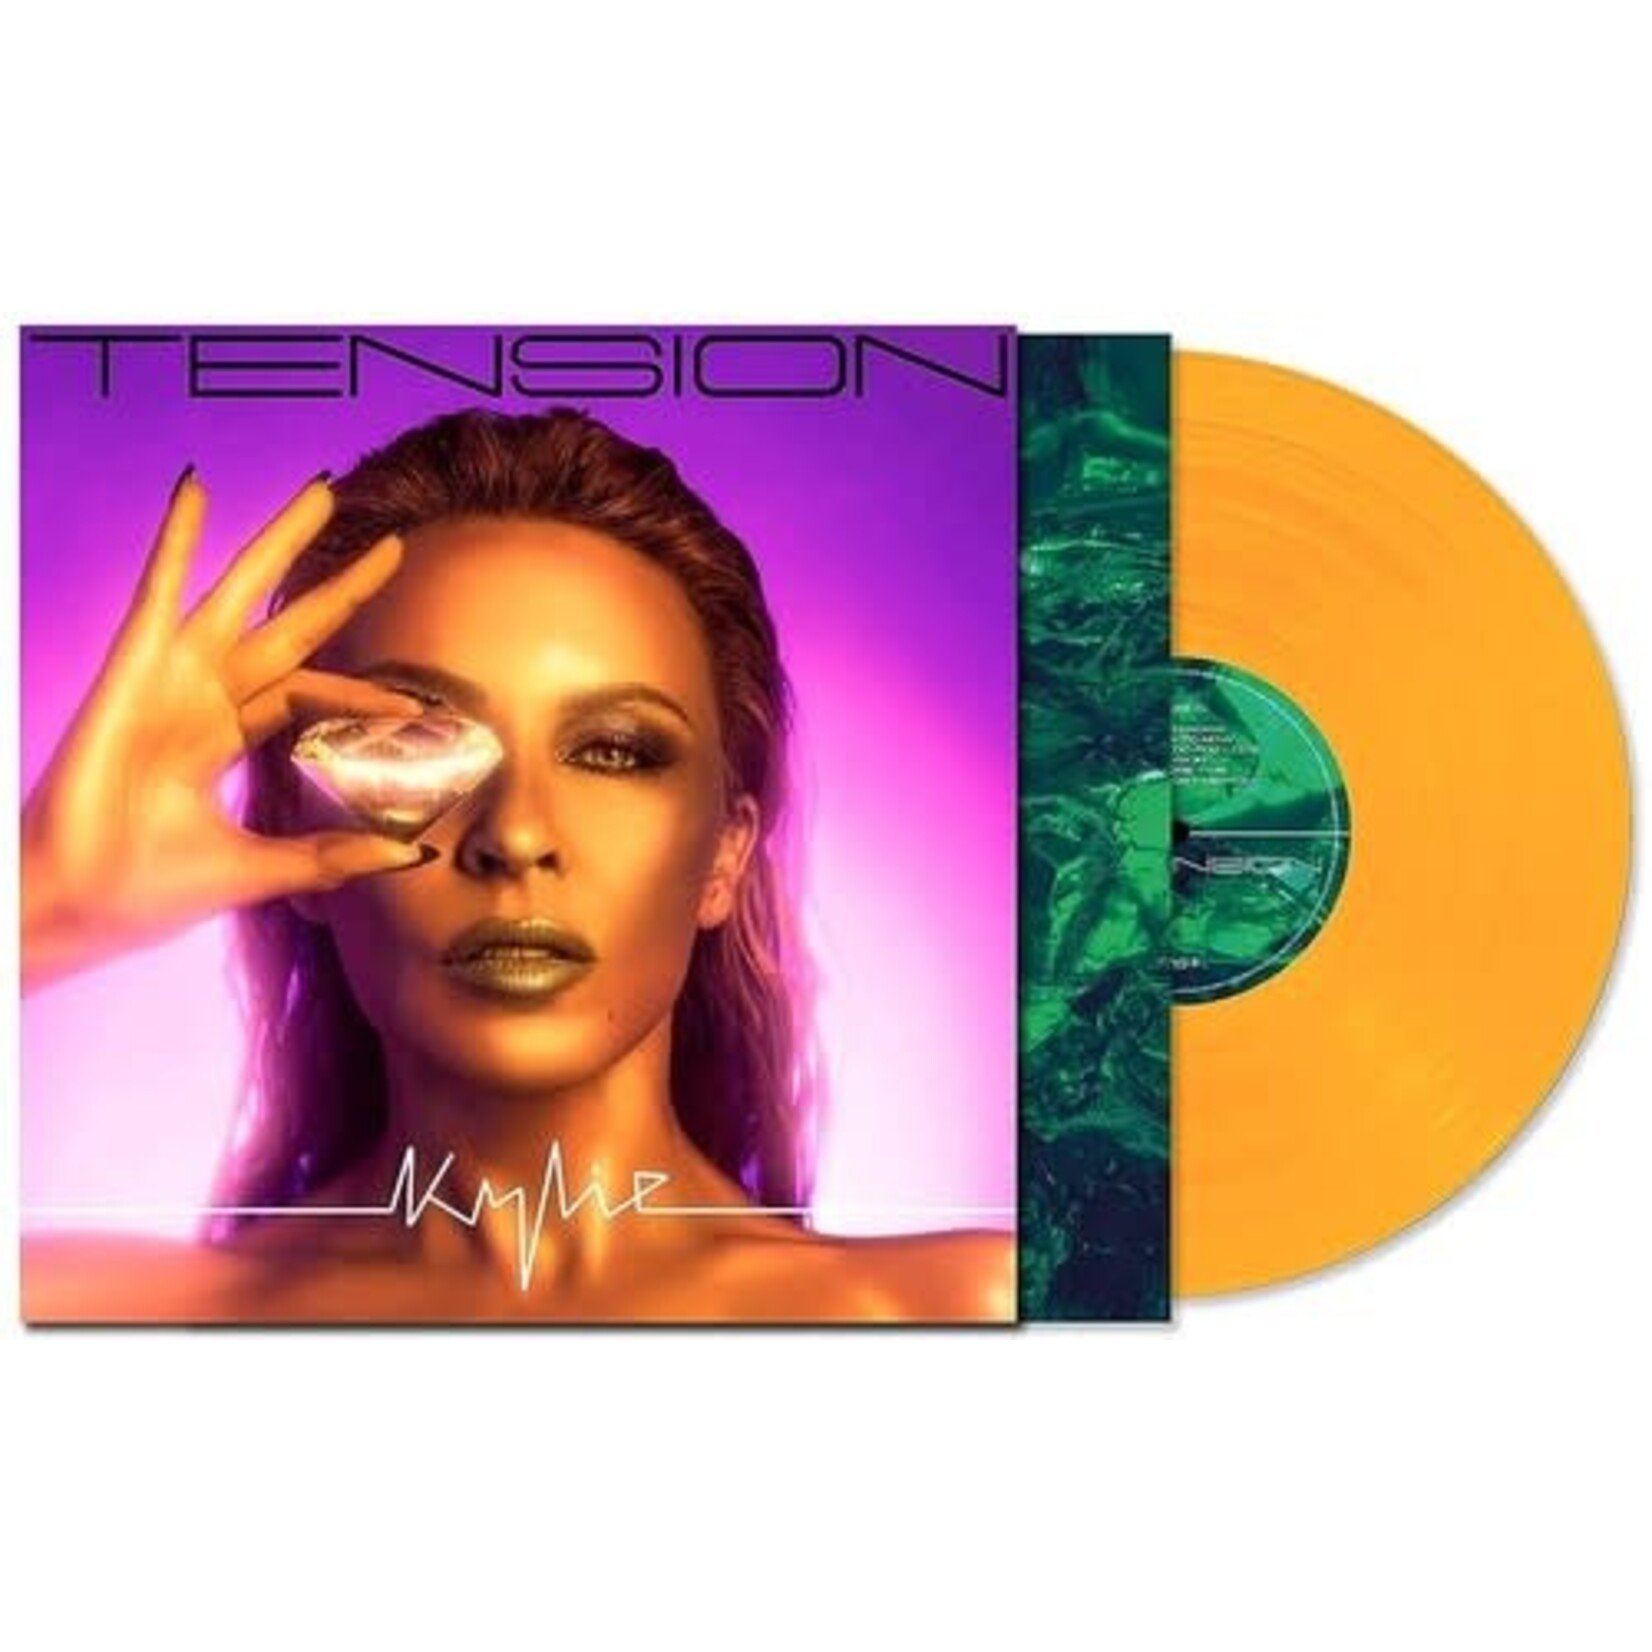 [New] Kylie Minogue - Tension (clear orange vinyl, indie exclusive)